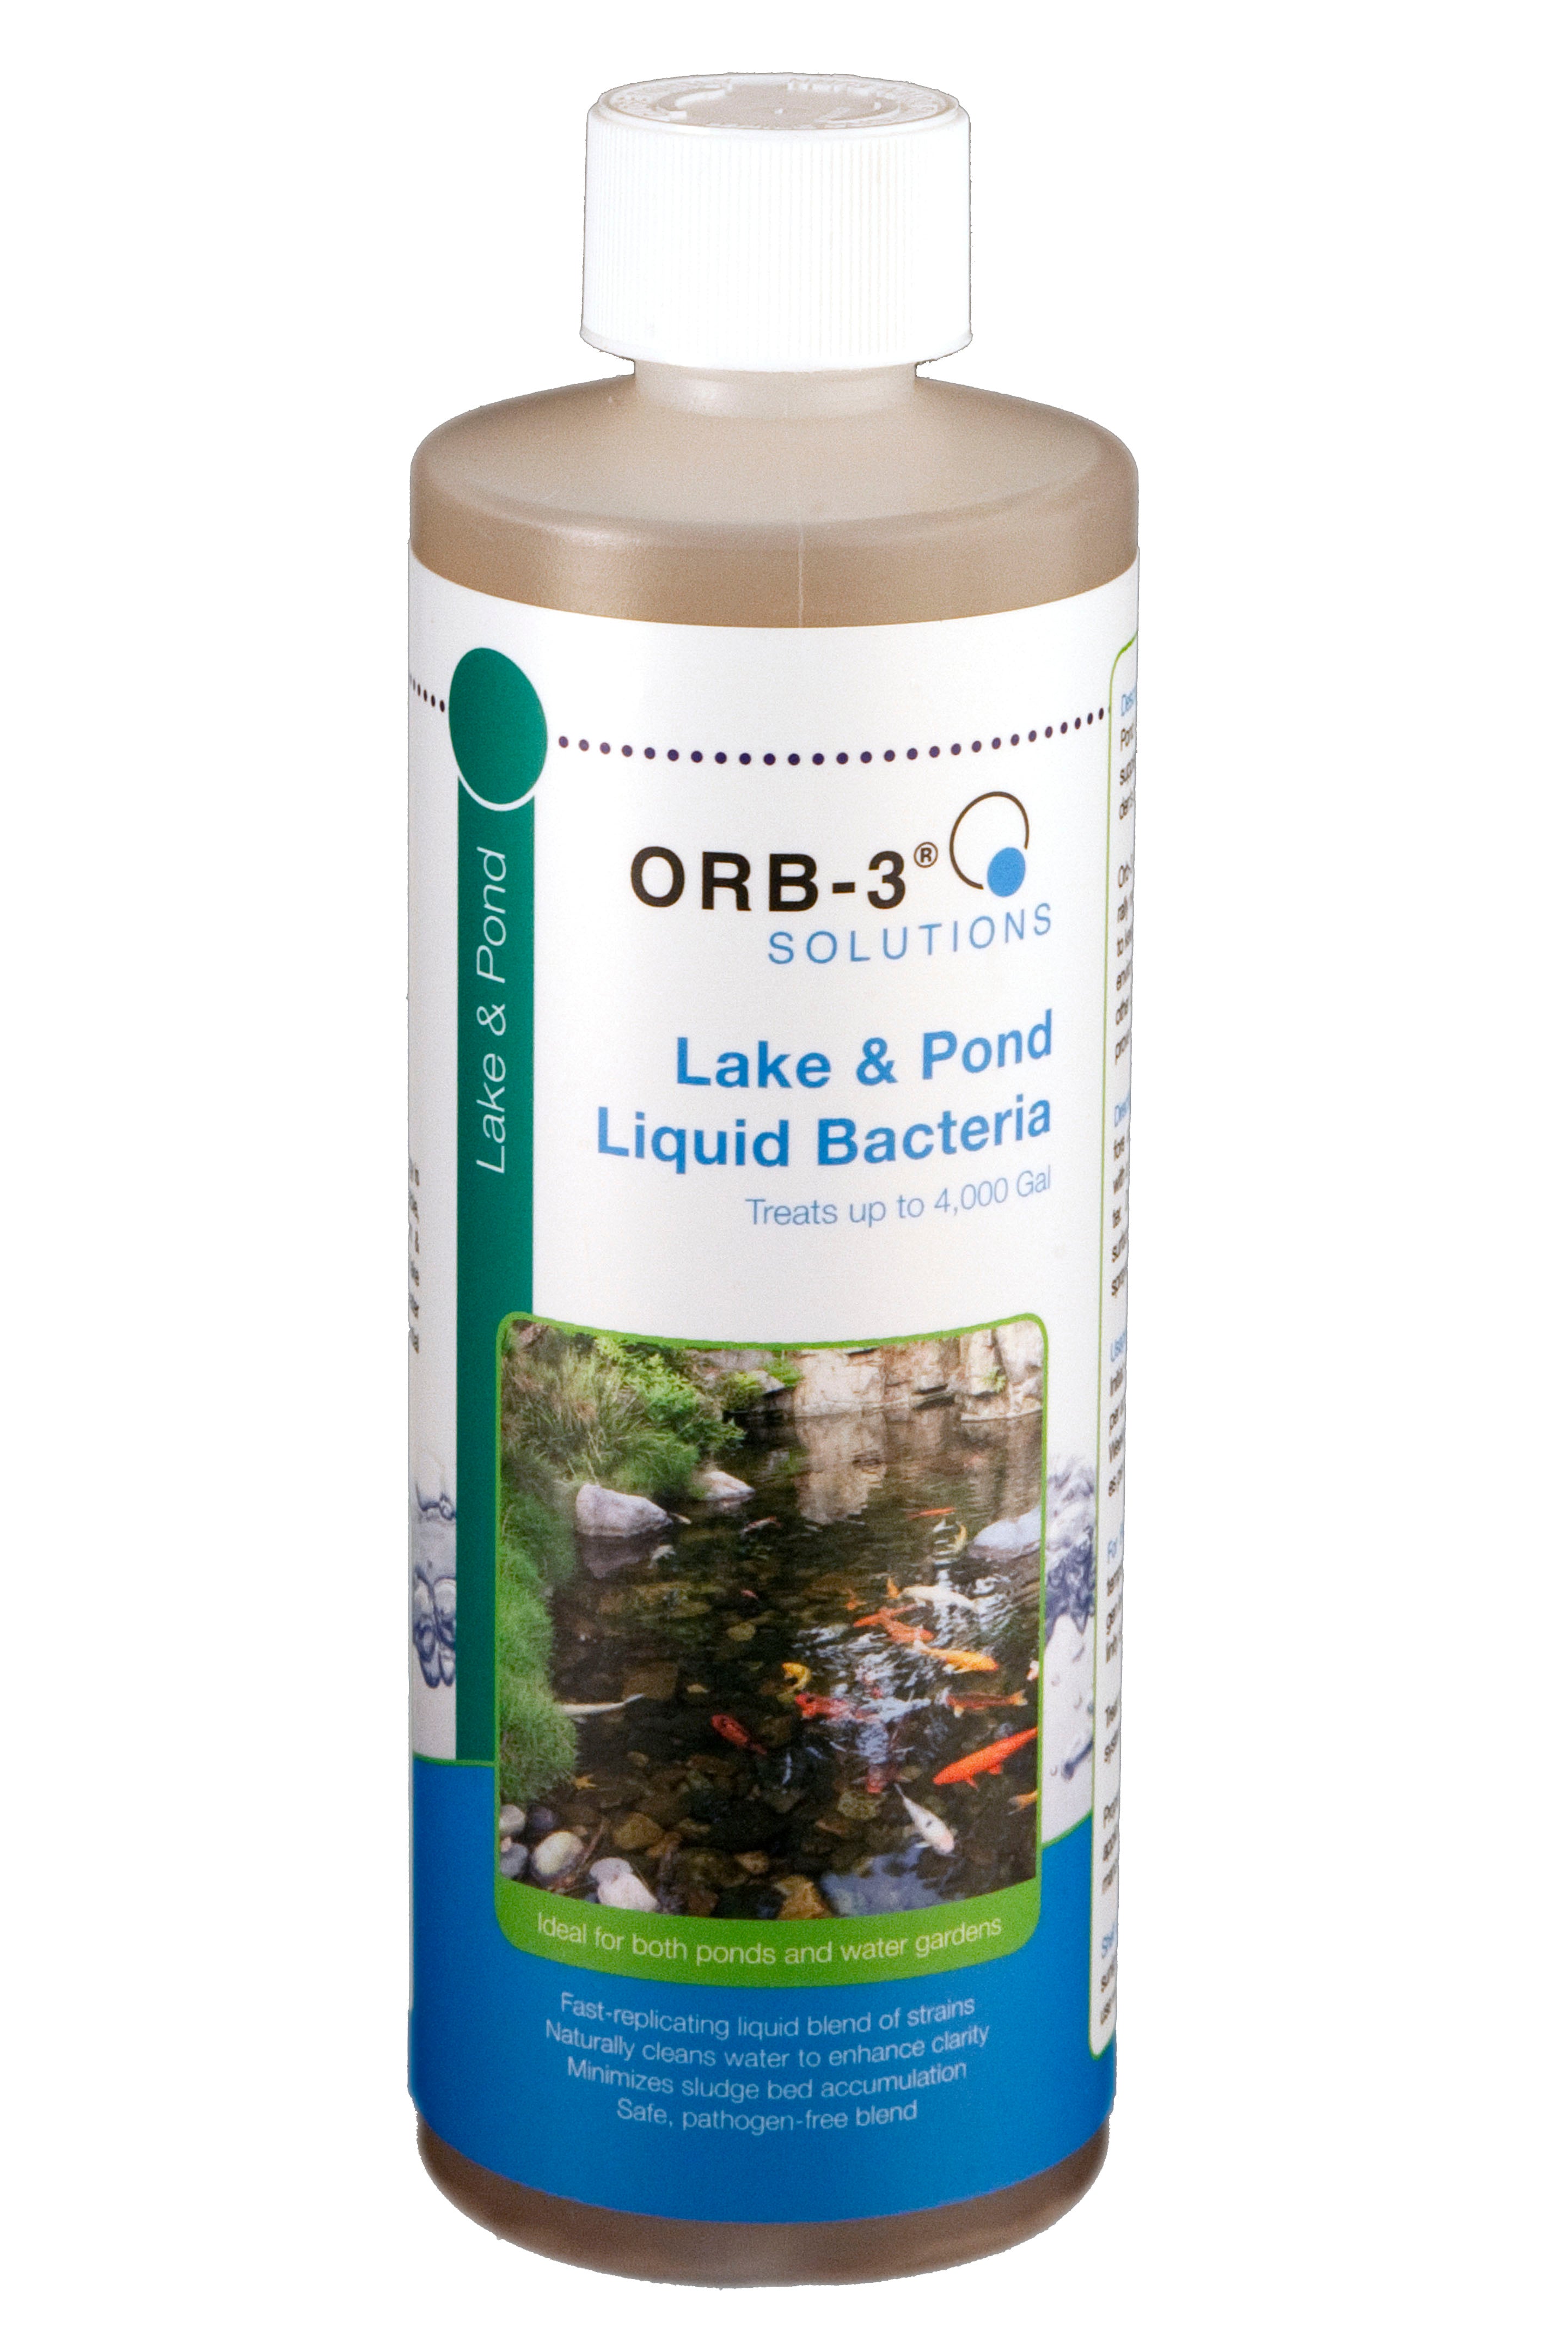 Orb-3 Lake & Pond Liquid Bacteria